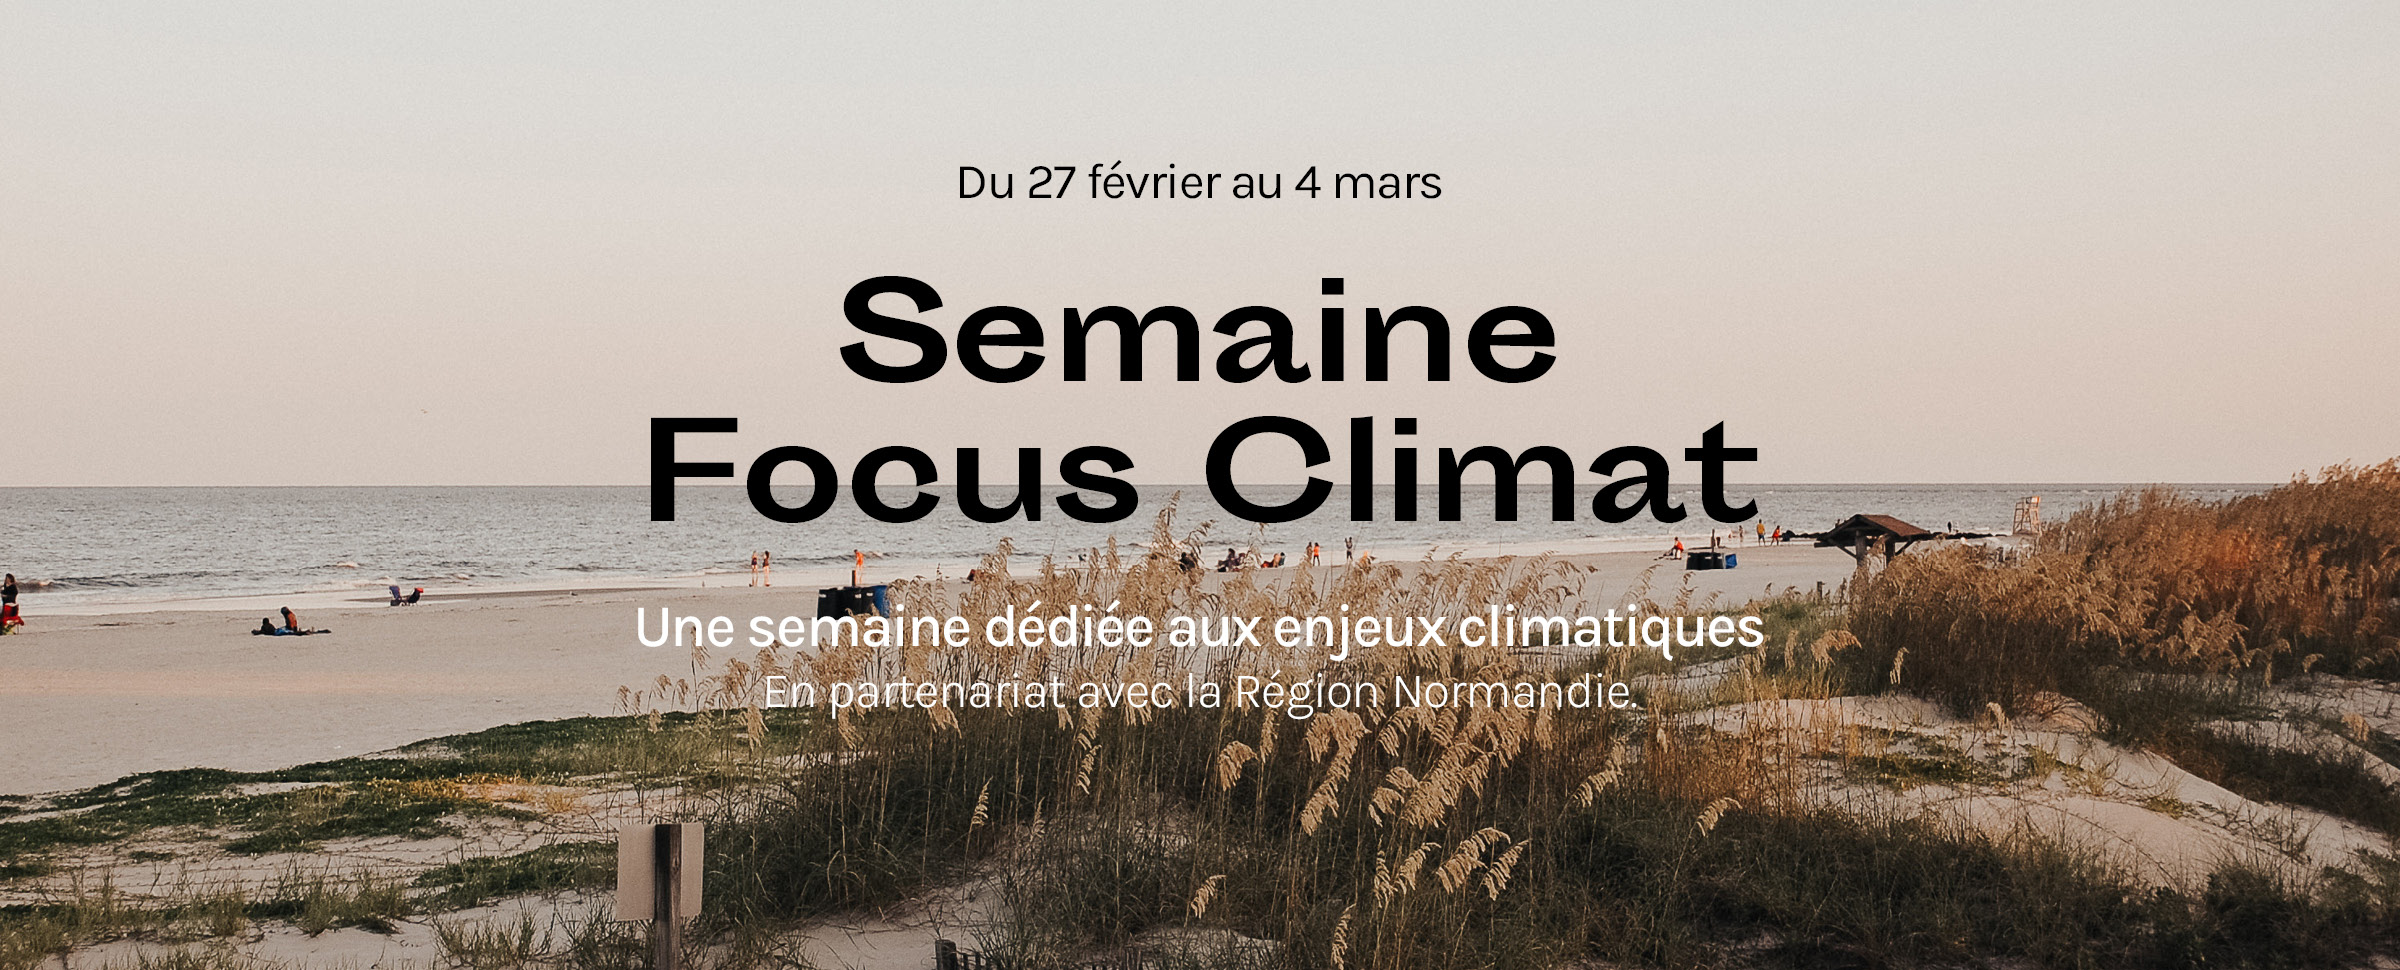 Semaine Focus Climat - La Renaissance